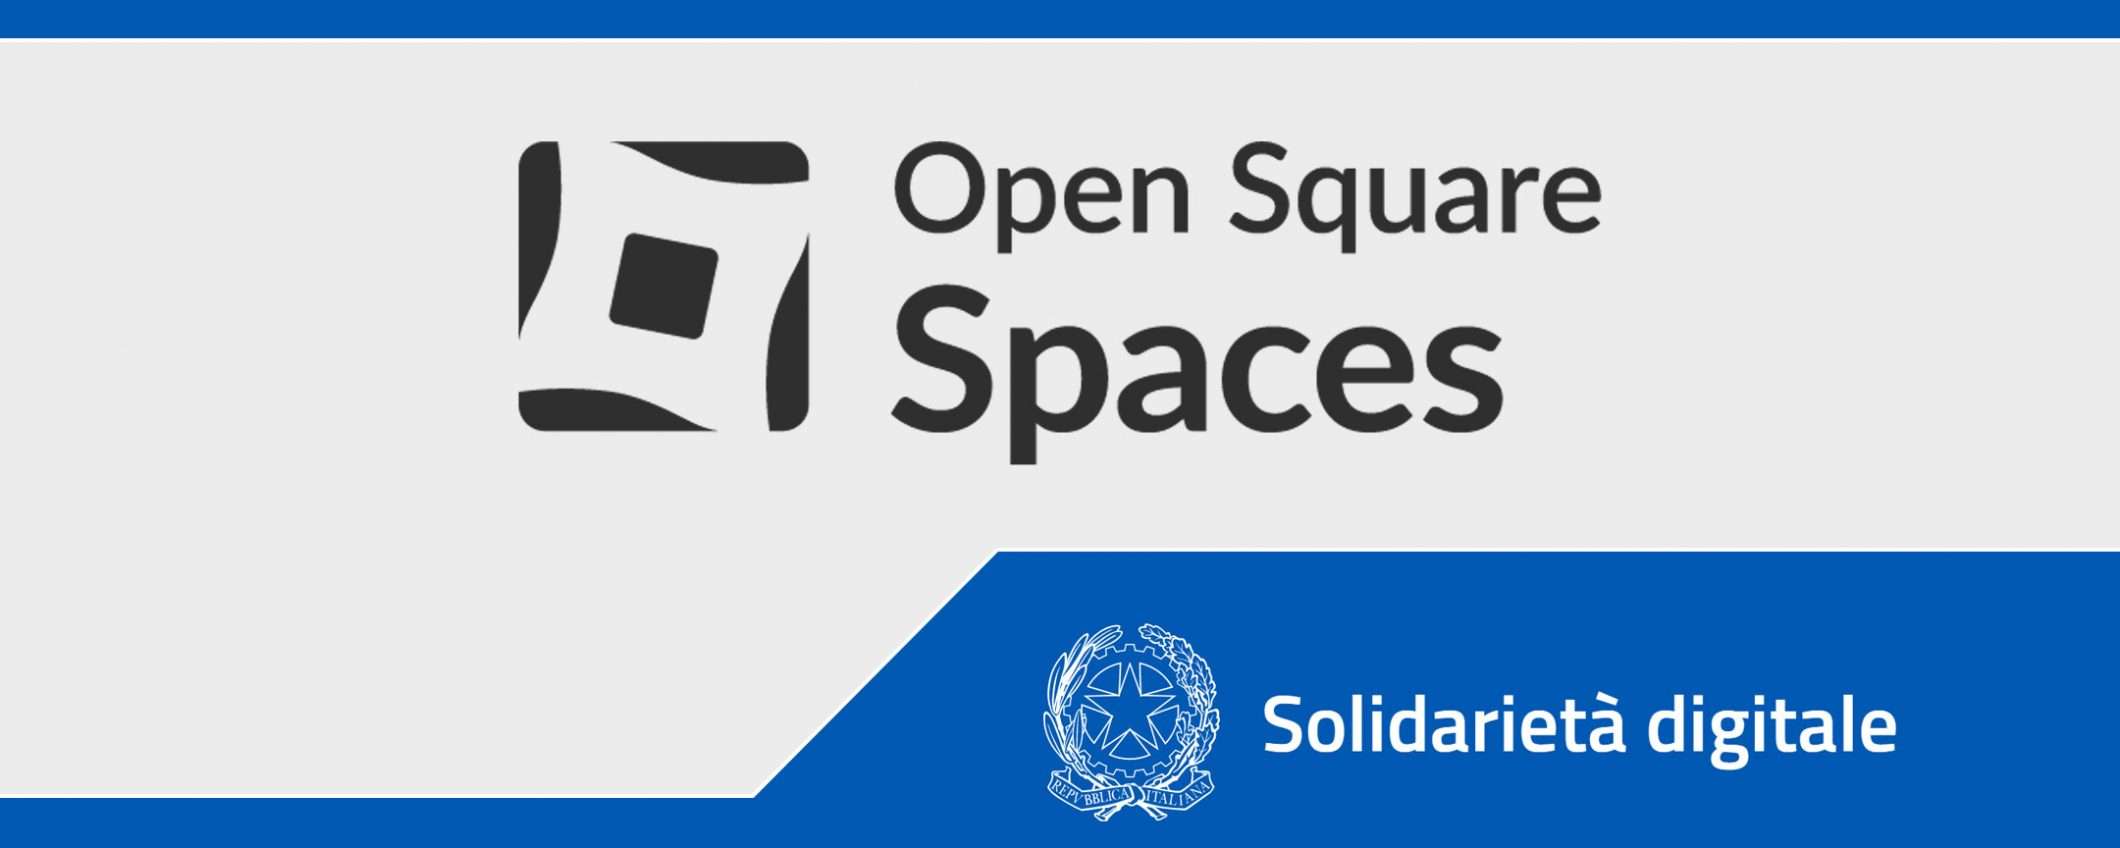 Solidarietà Digitale: Open Square Spaces